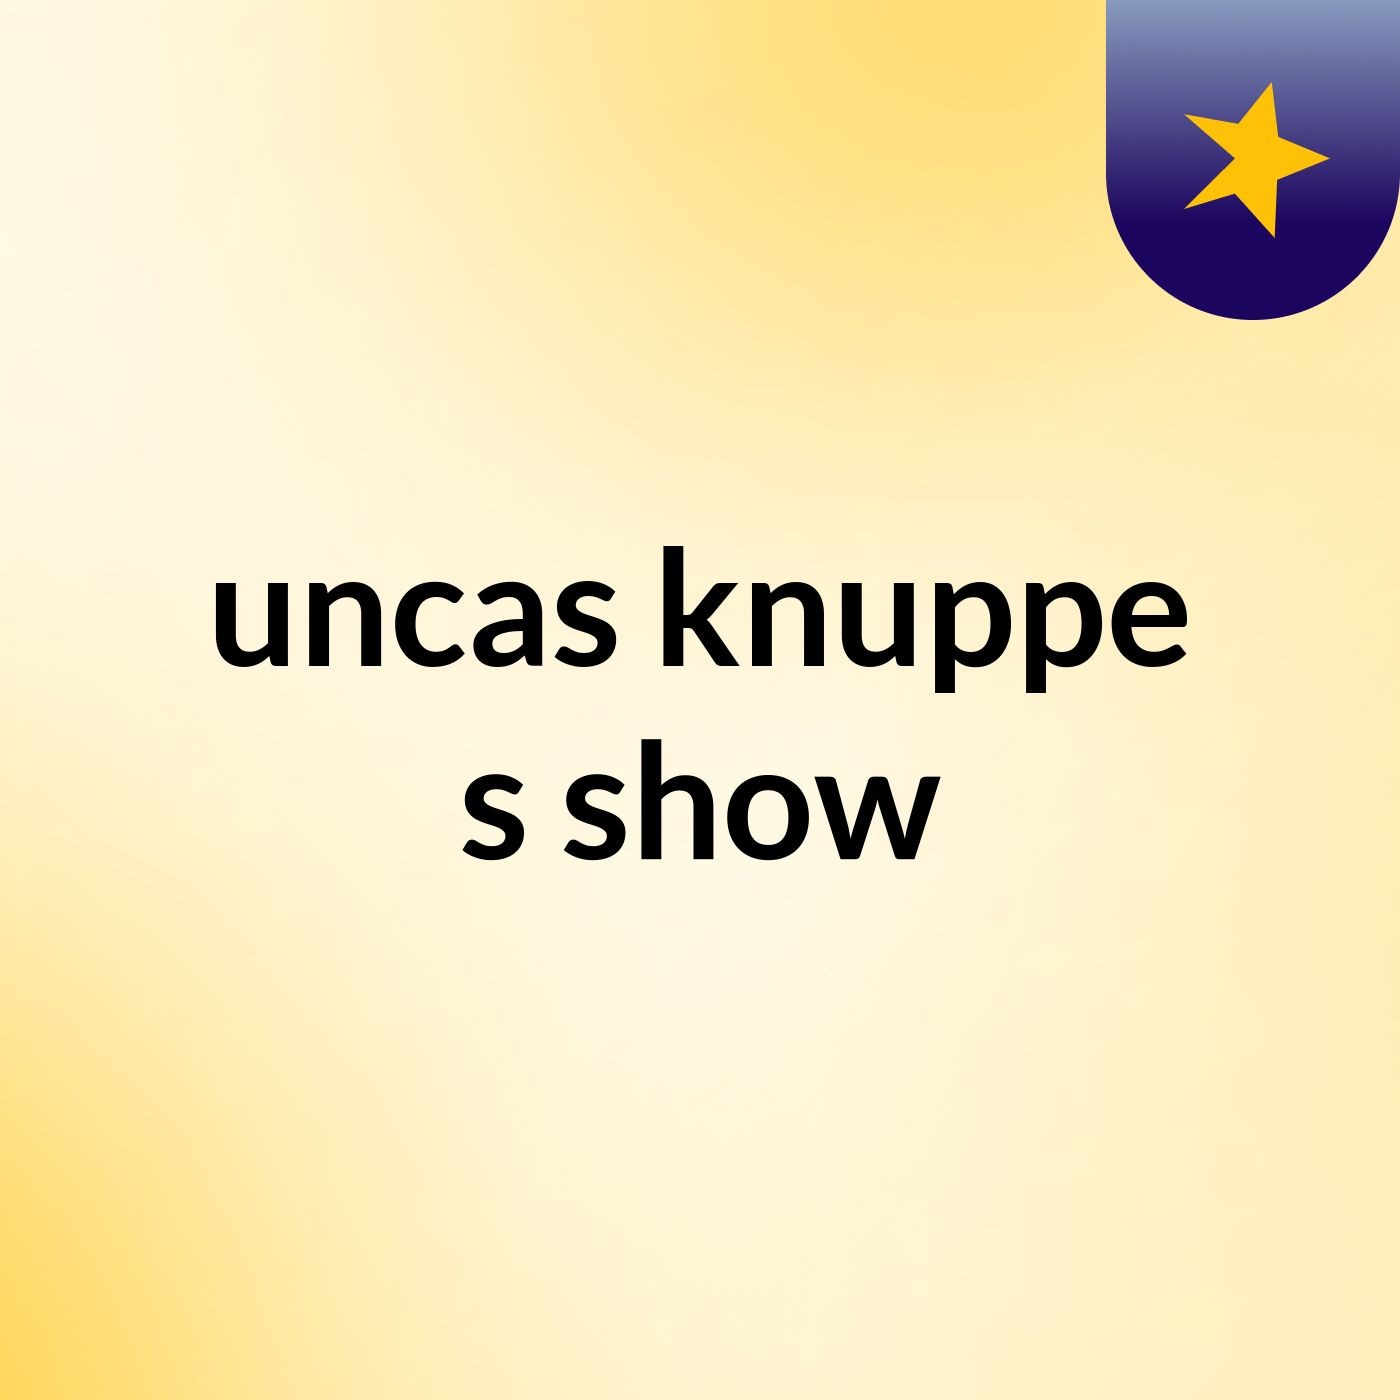 uncas knuppe's show